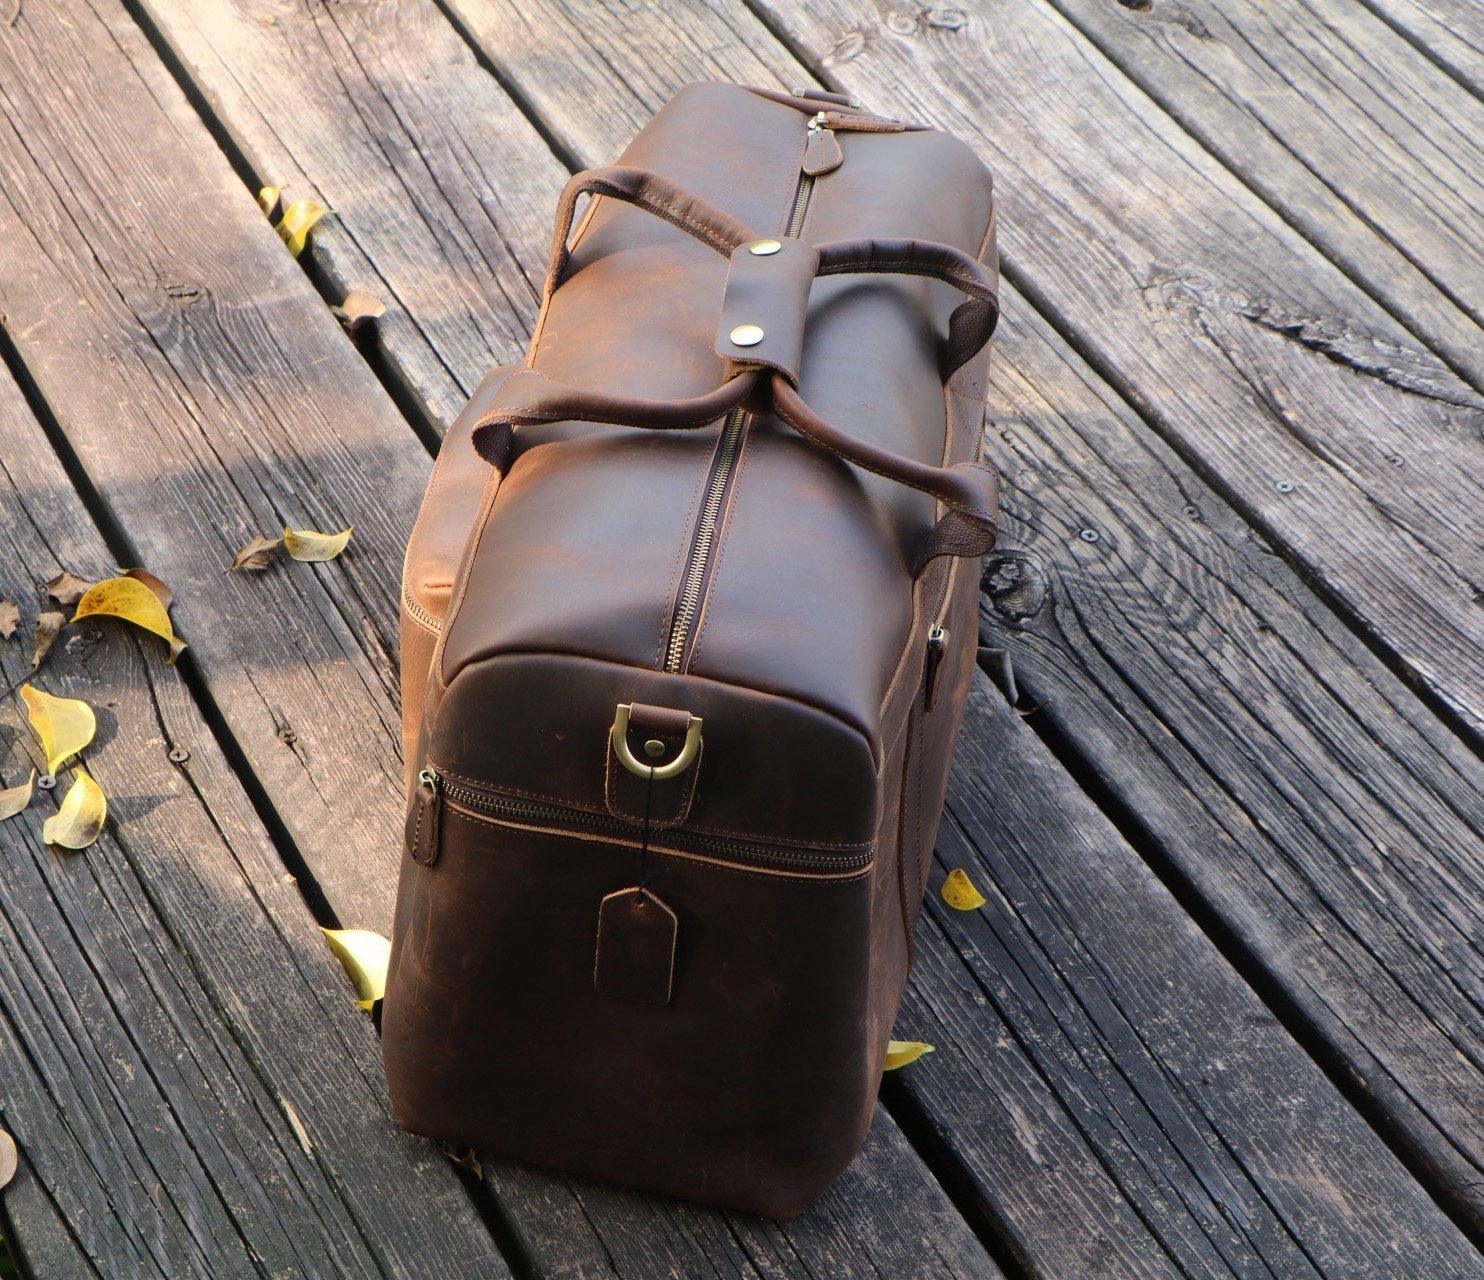 23'' Cowhide Leather Weekender Bag for Men - Woosir